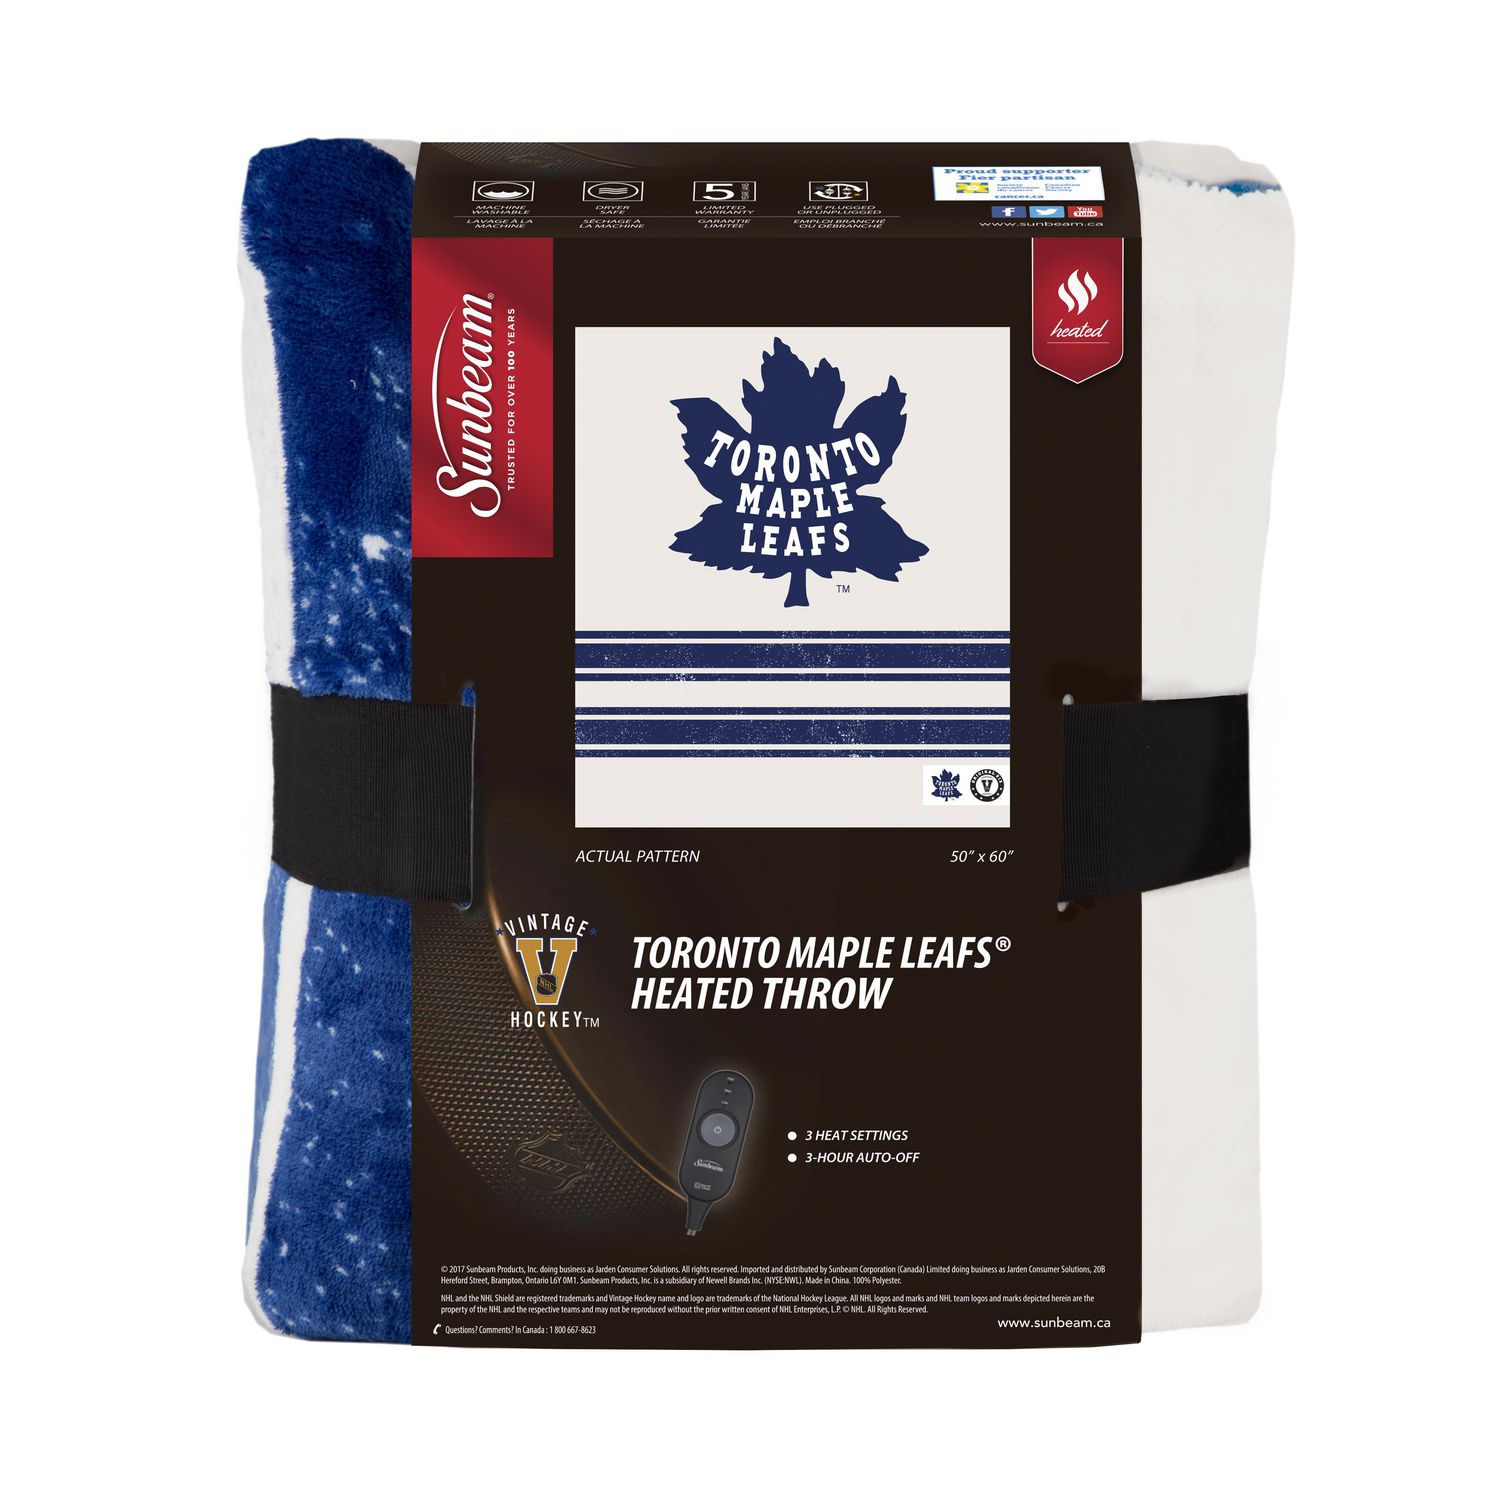 NHL®: Toronto Maple Leafs ® - Scentsy Warmer